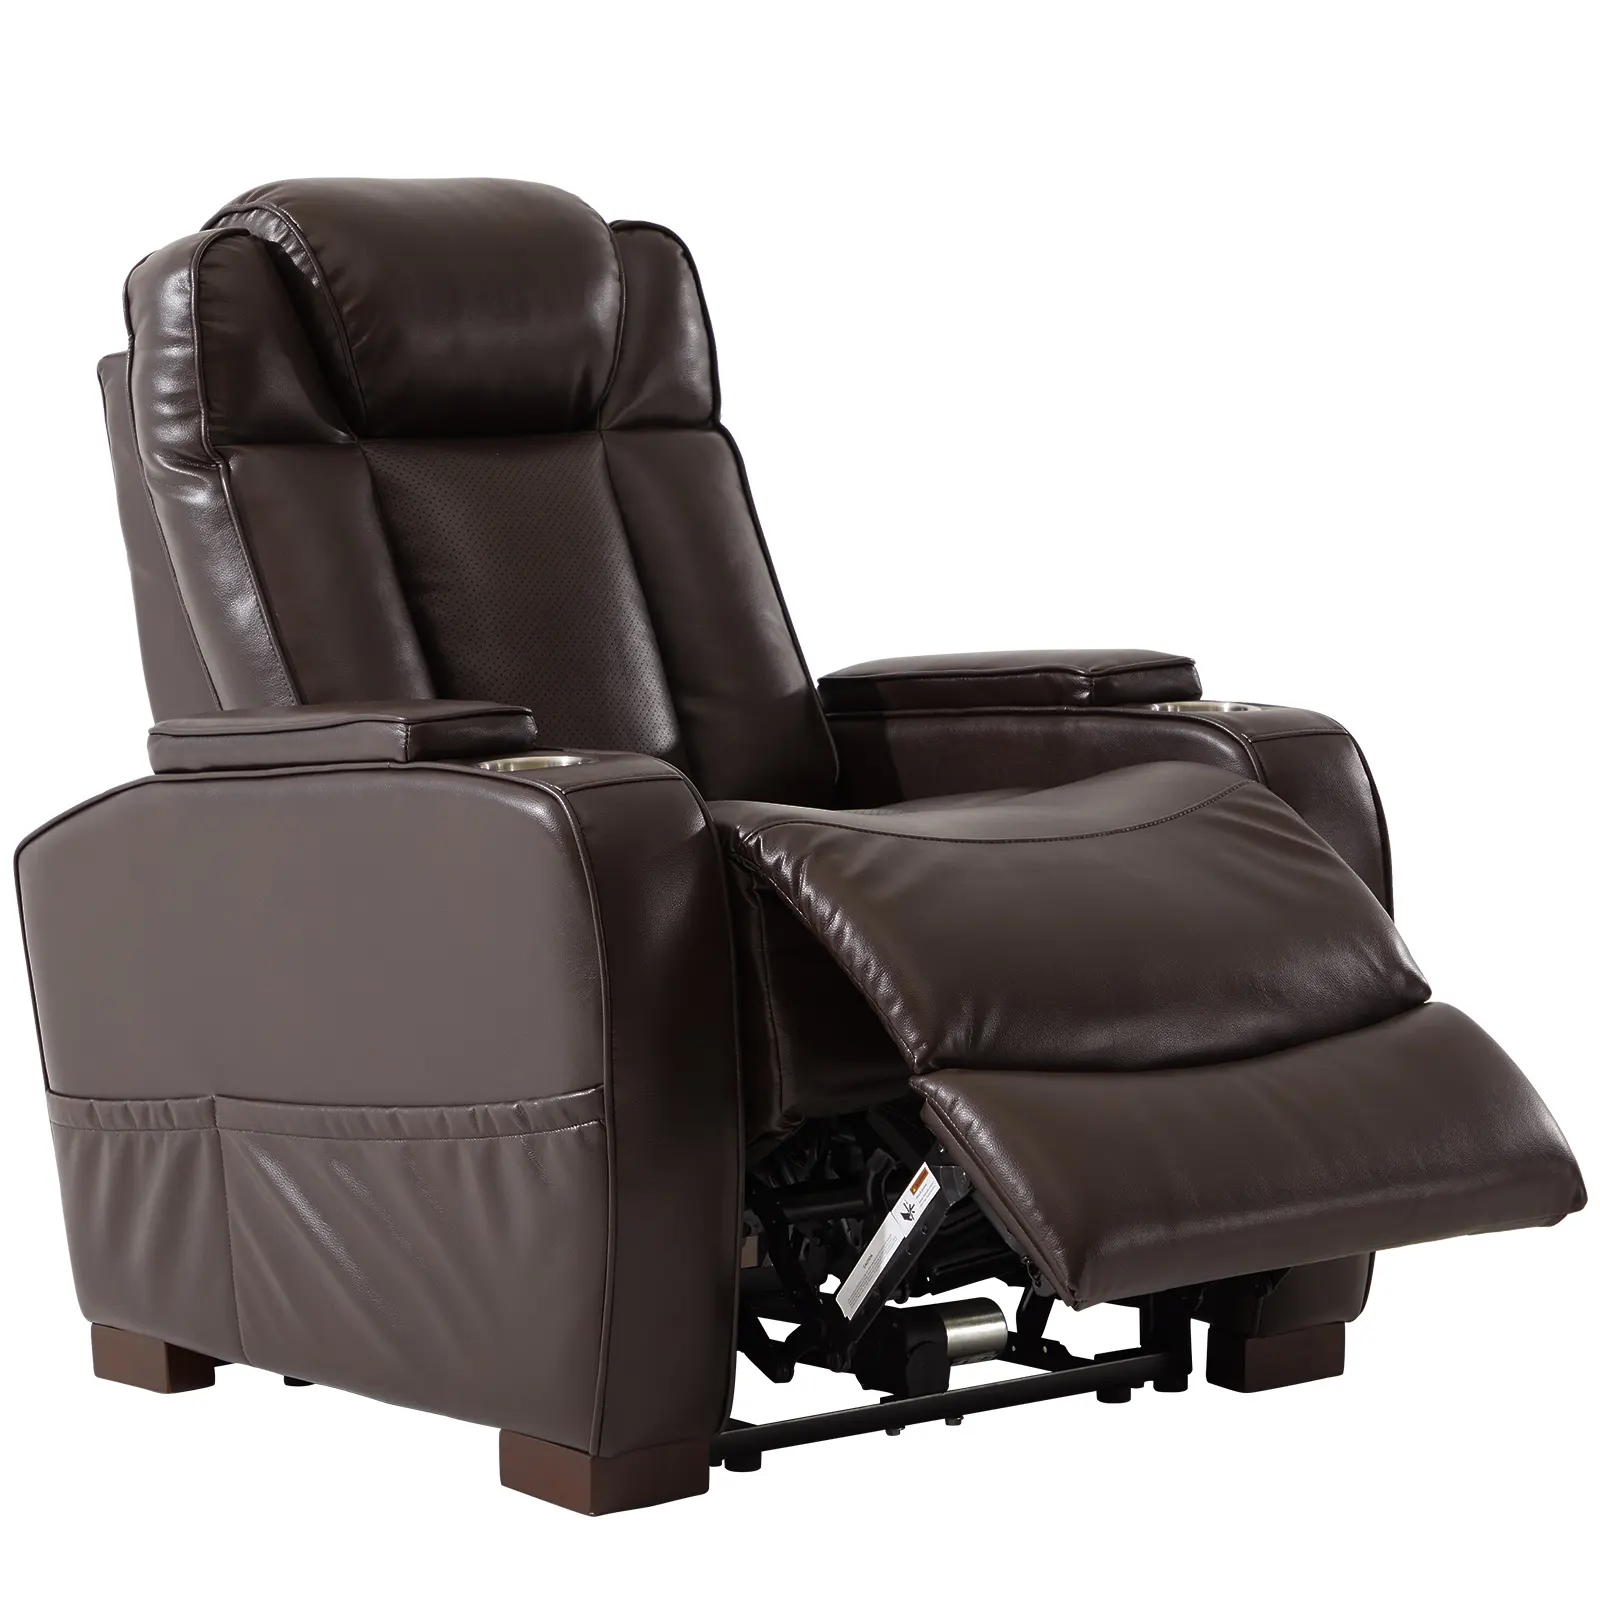 USB kanepe ve 2 bardak tutucular ev sinema koltuğu ile ayarlanabilir kafalık ile tiyatro şarj portu güç Recliner sandalye